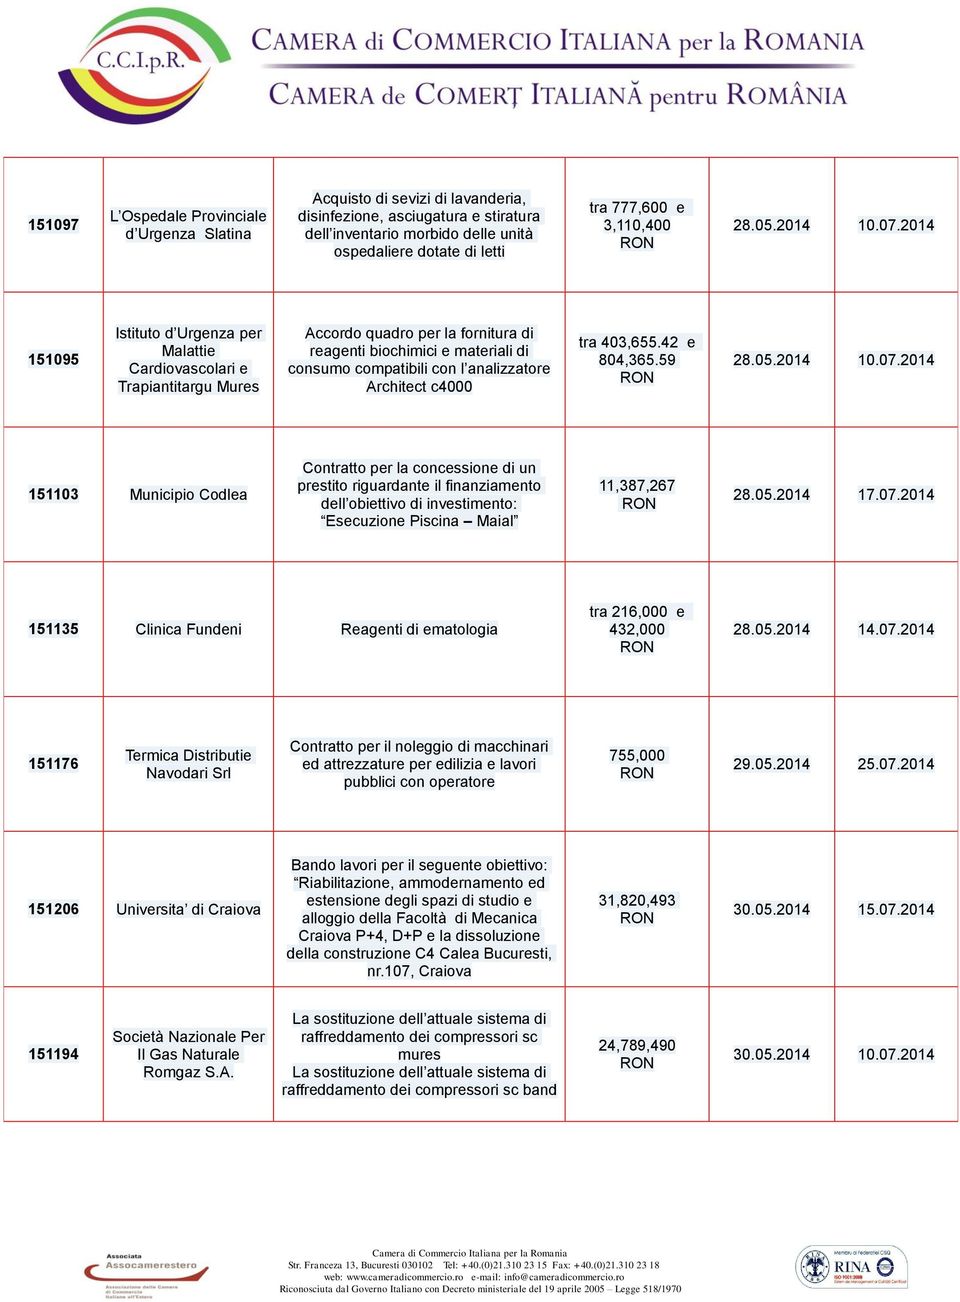 2014 151095 Istituto d Urgenza per Malattie Cardiovascolari e Trapiantitargu Mures Accordo quadro per la fornitura di reagenti biochimici e materiali di consumo compatibili con l analizzatore